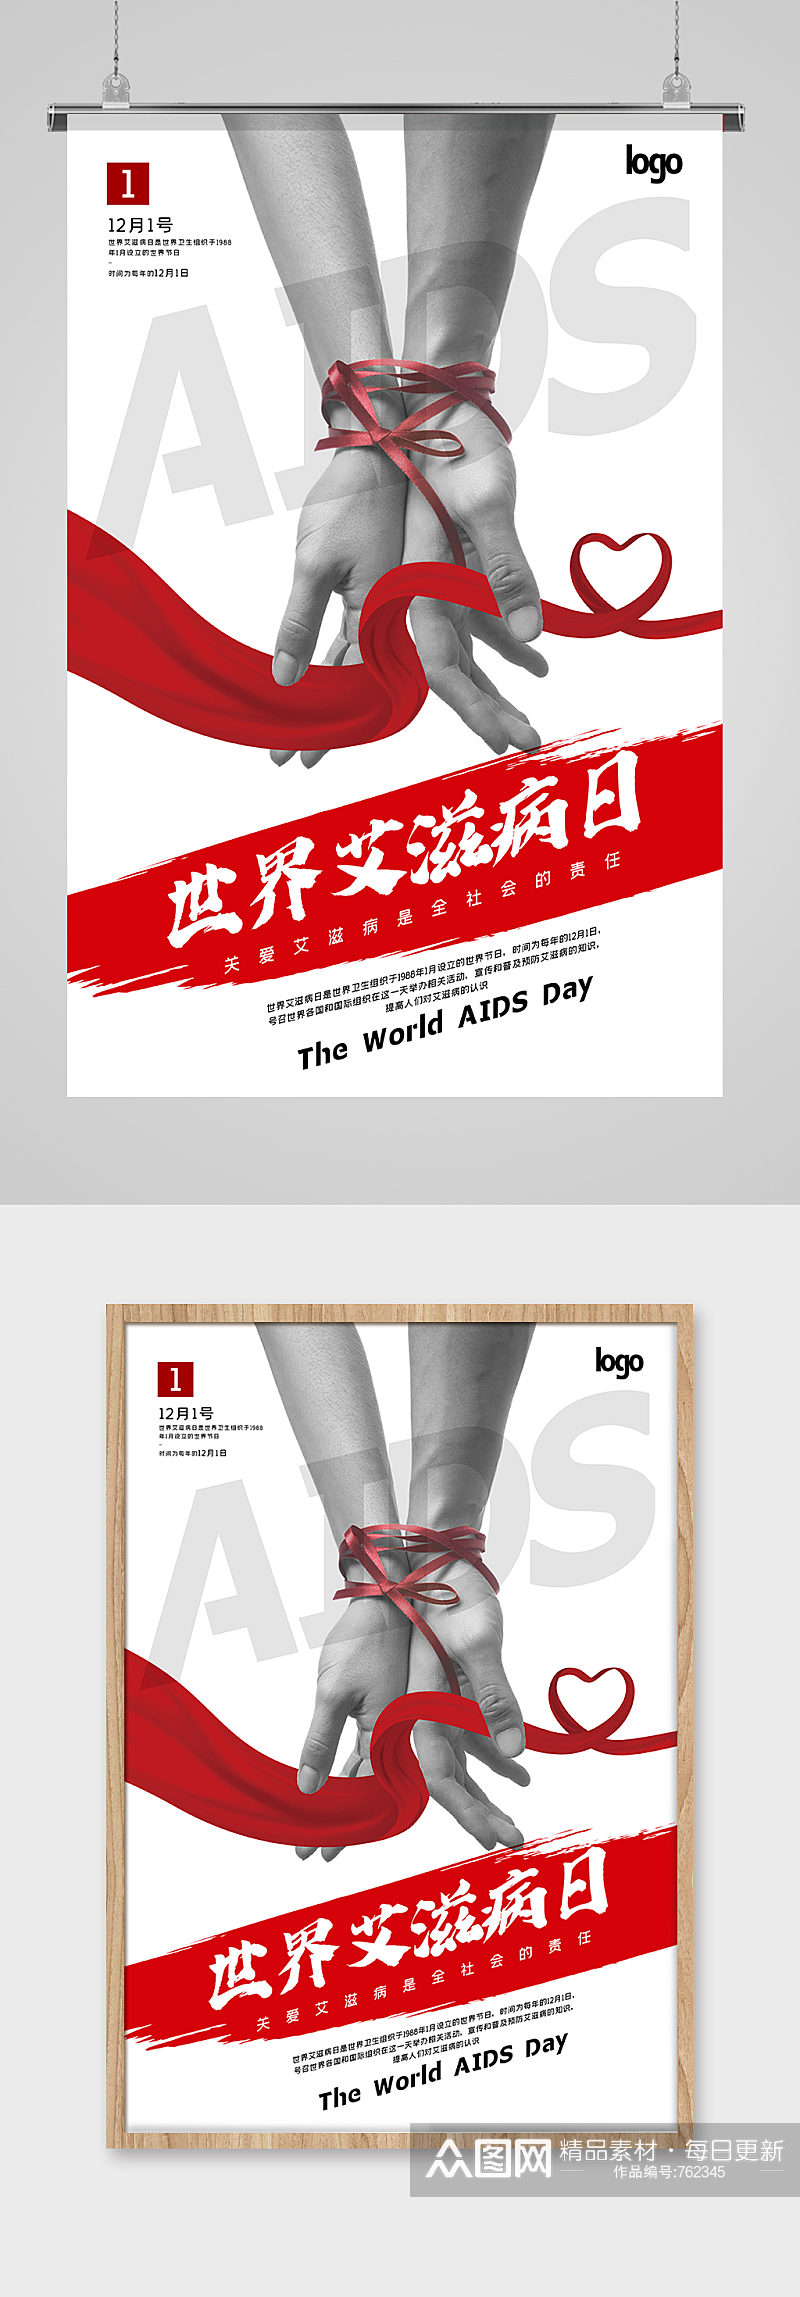 简洁大气世界艾滋病日宣传海报素材